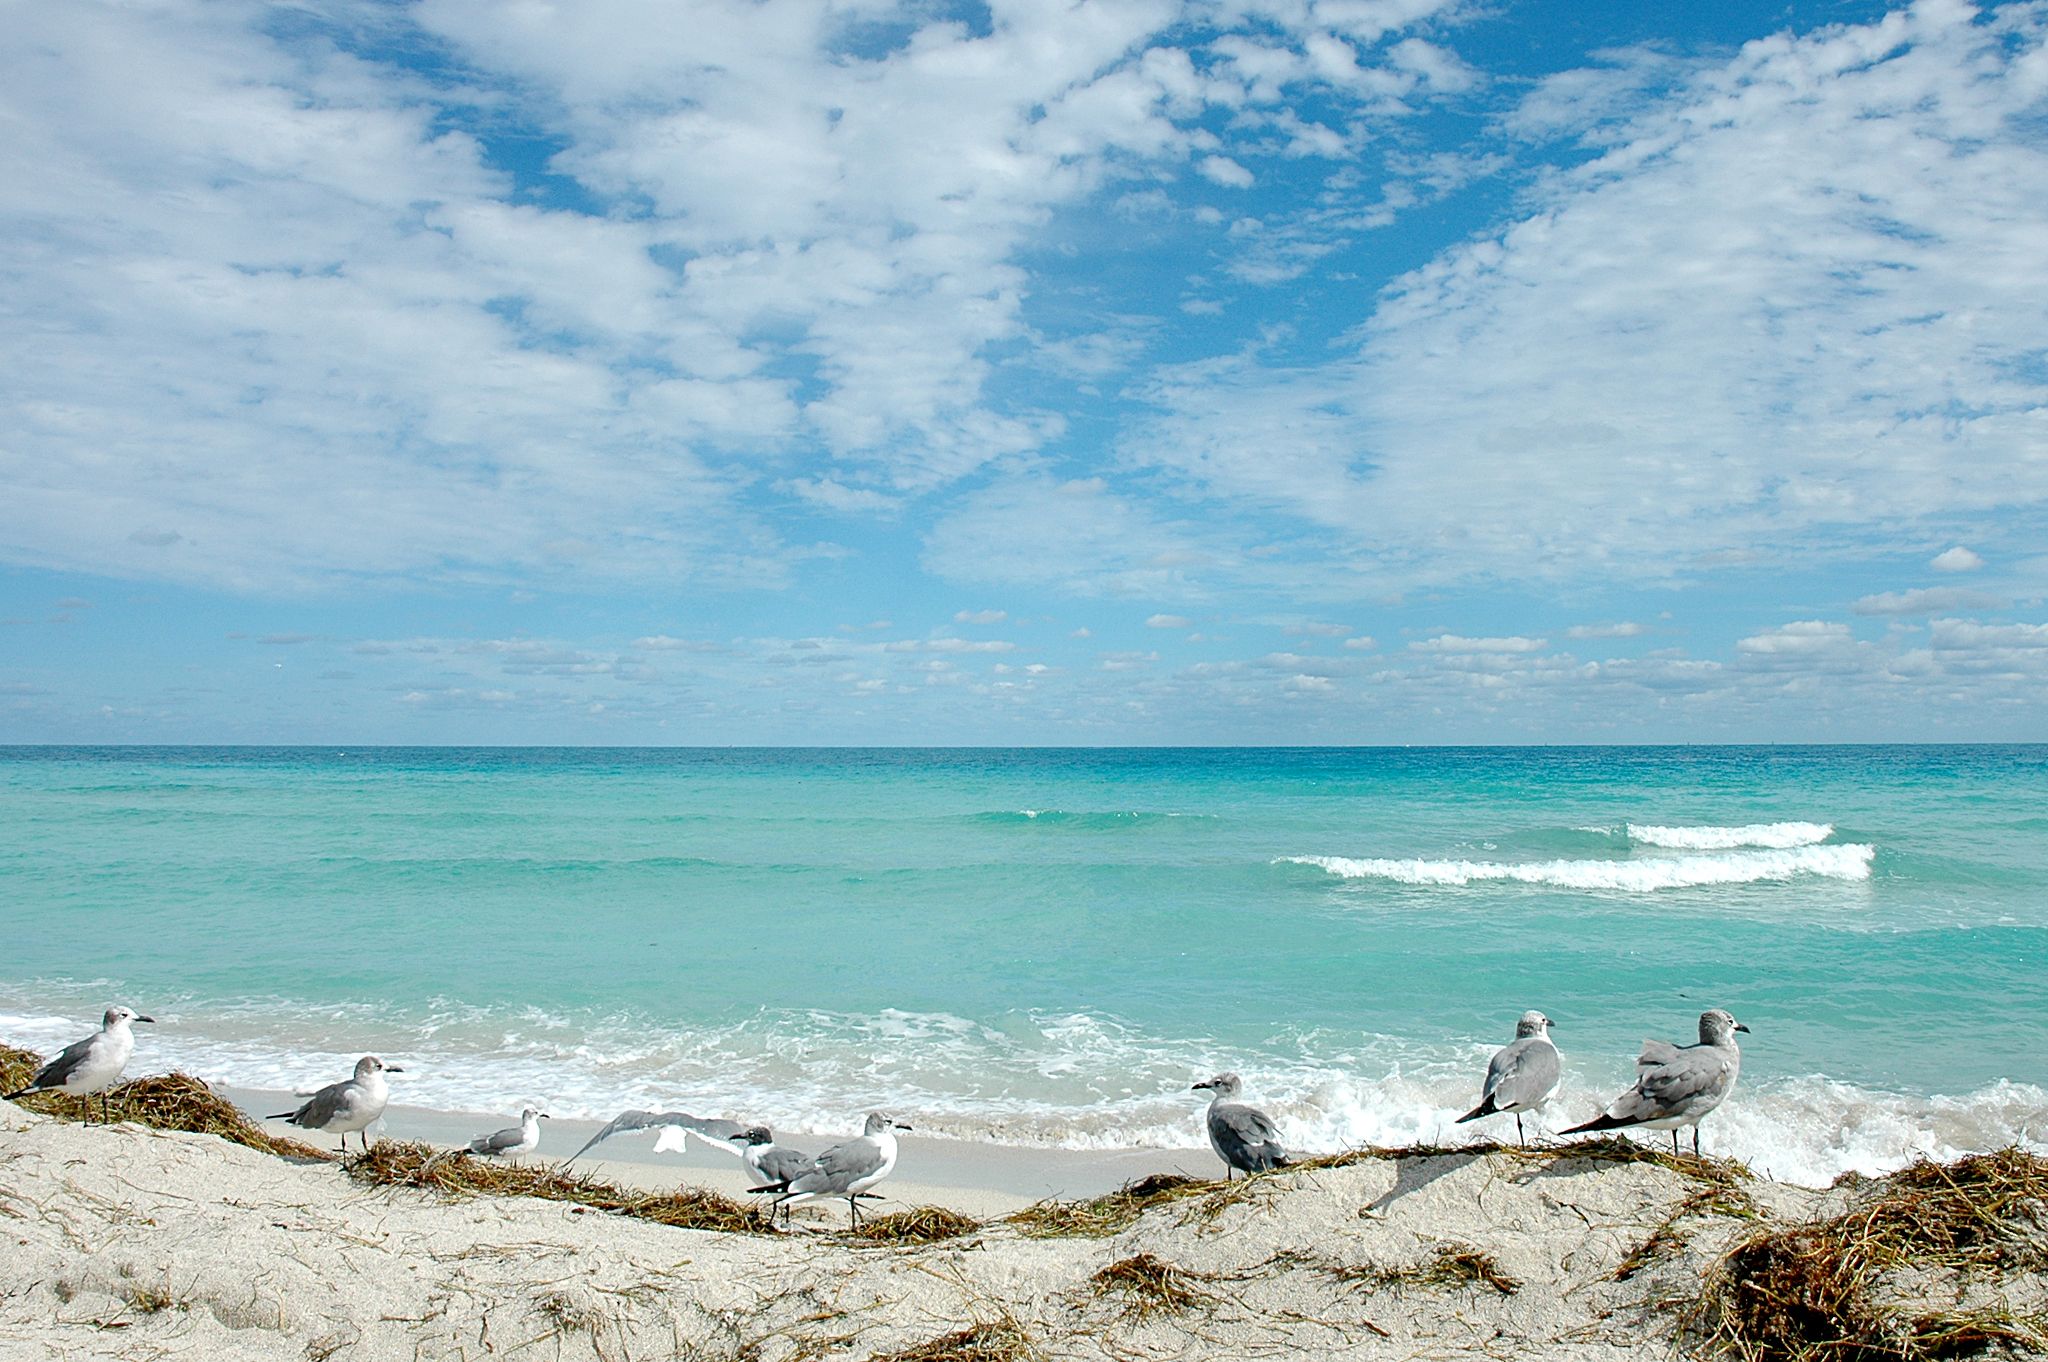 Florida beach photos